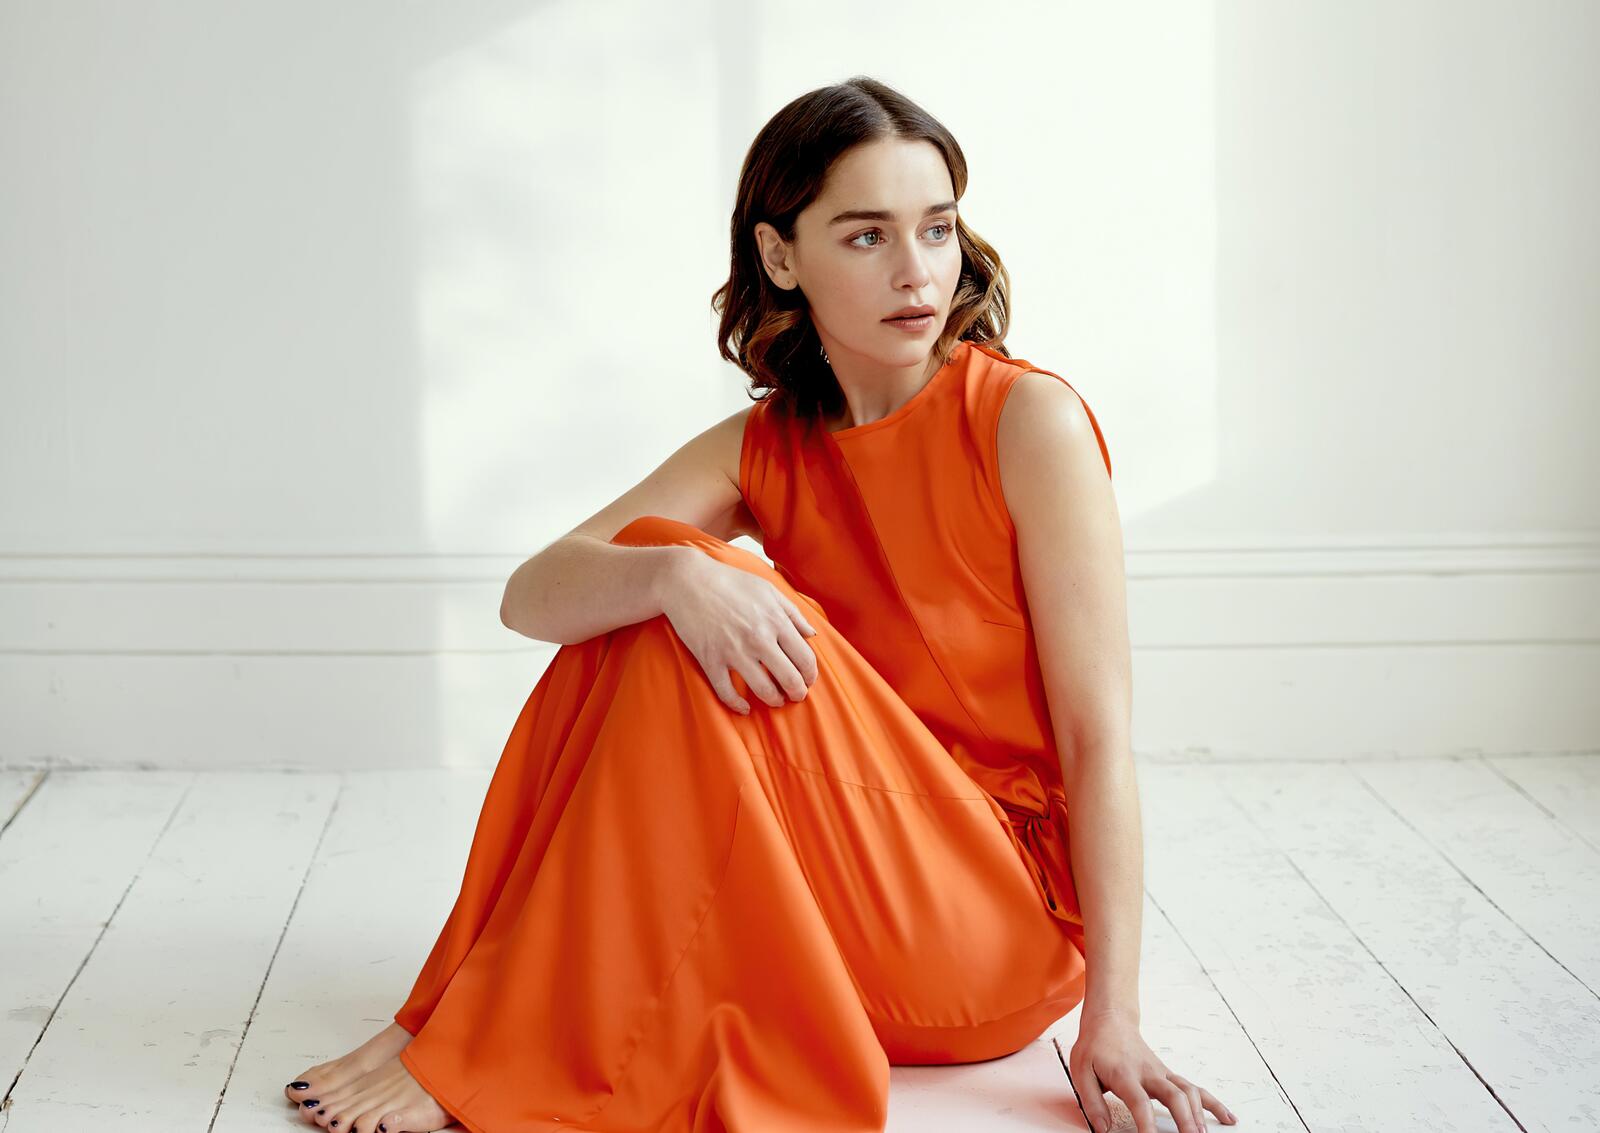 Бесплатное фото Эмилия Кларк в оранжевом платье